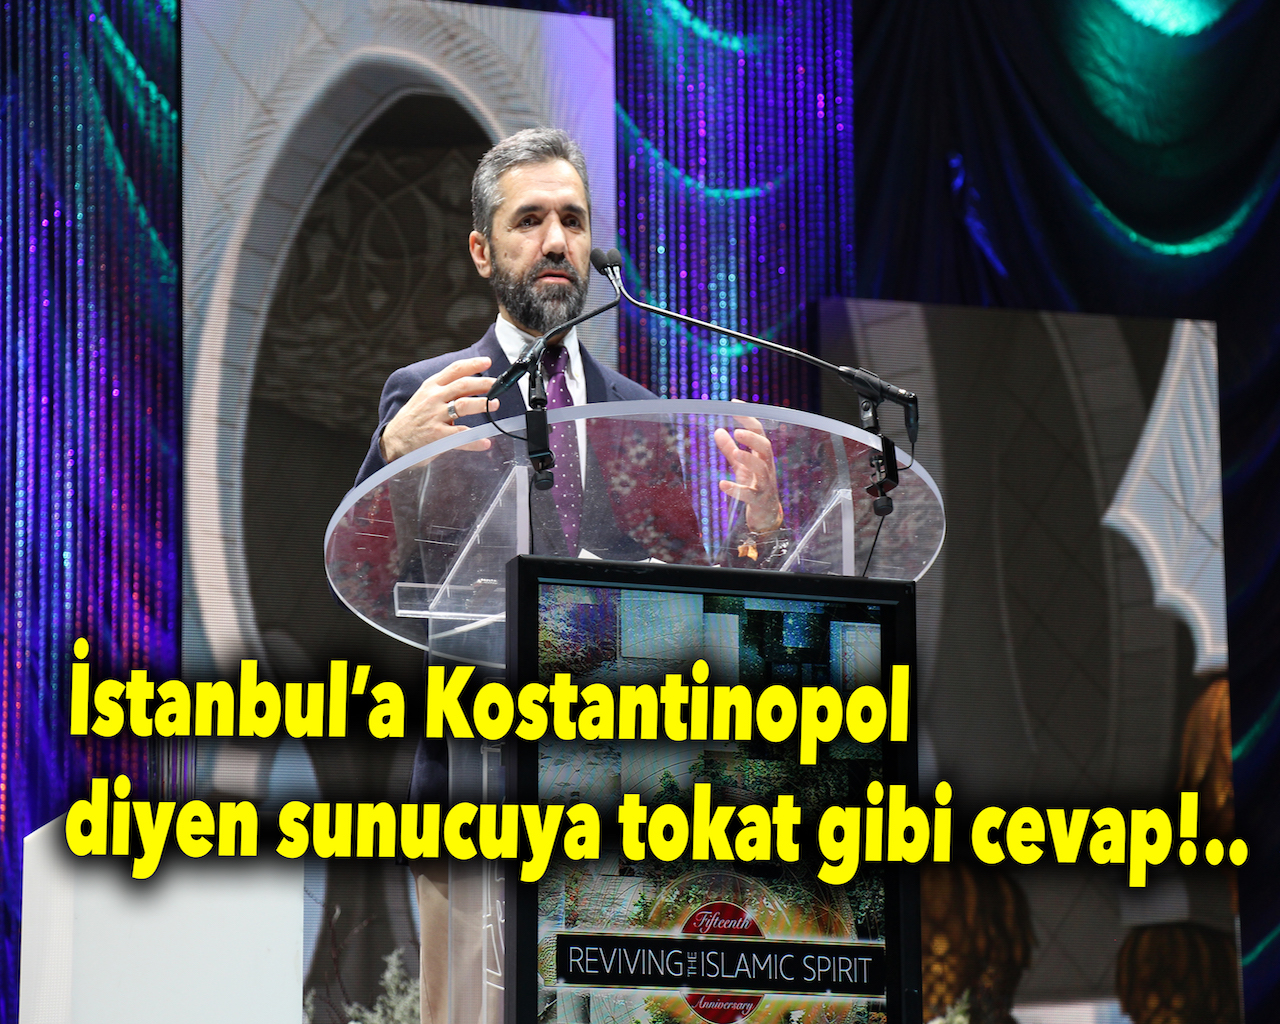 RIS sunucusu İstanbul'a 'Kostantinopol' dedi, cevabını aldı..